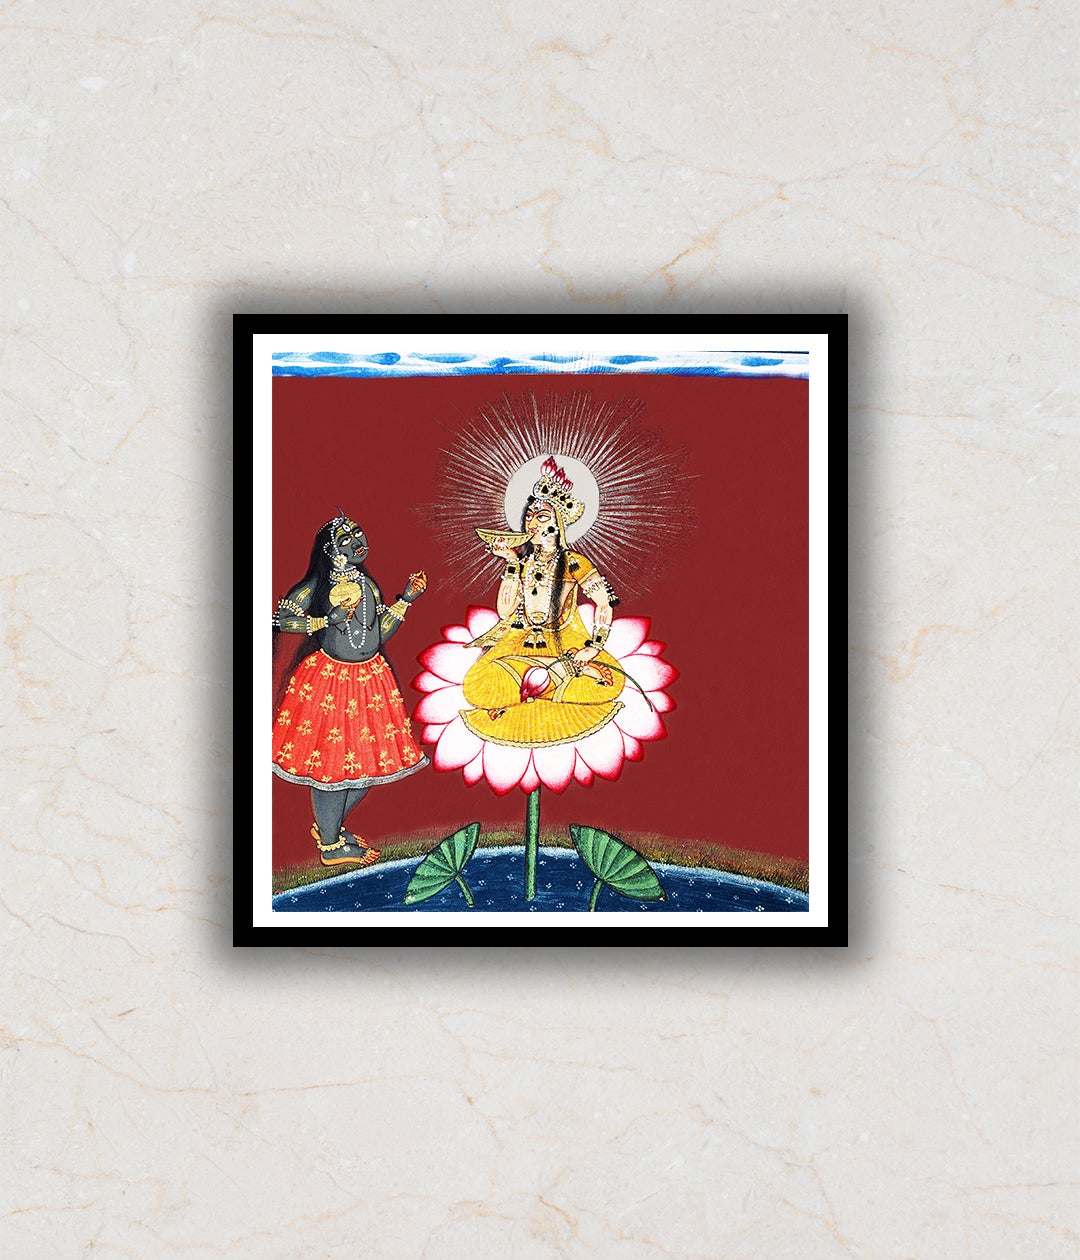 Siddha Lakhsmi With Kali Artwork Painting For Home Wall Art DŽcor